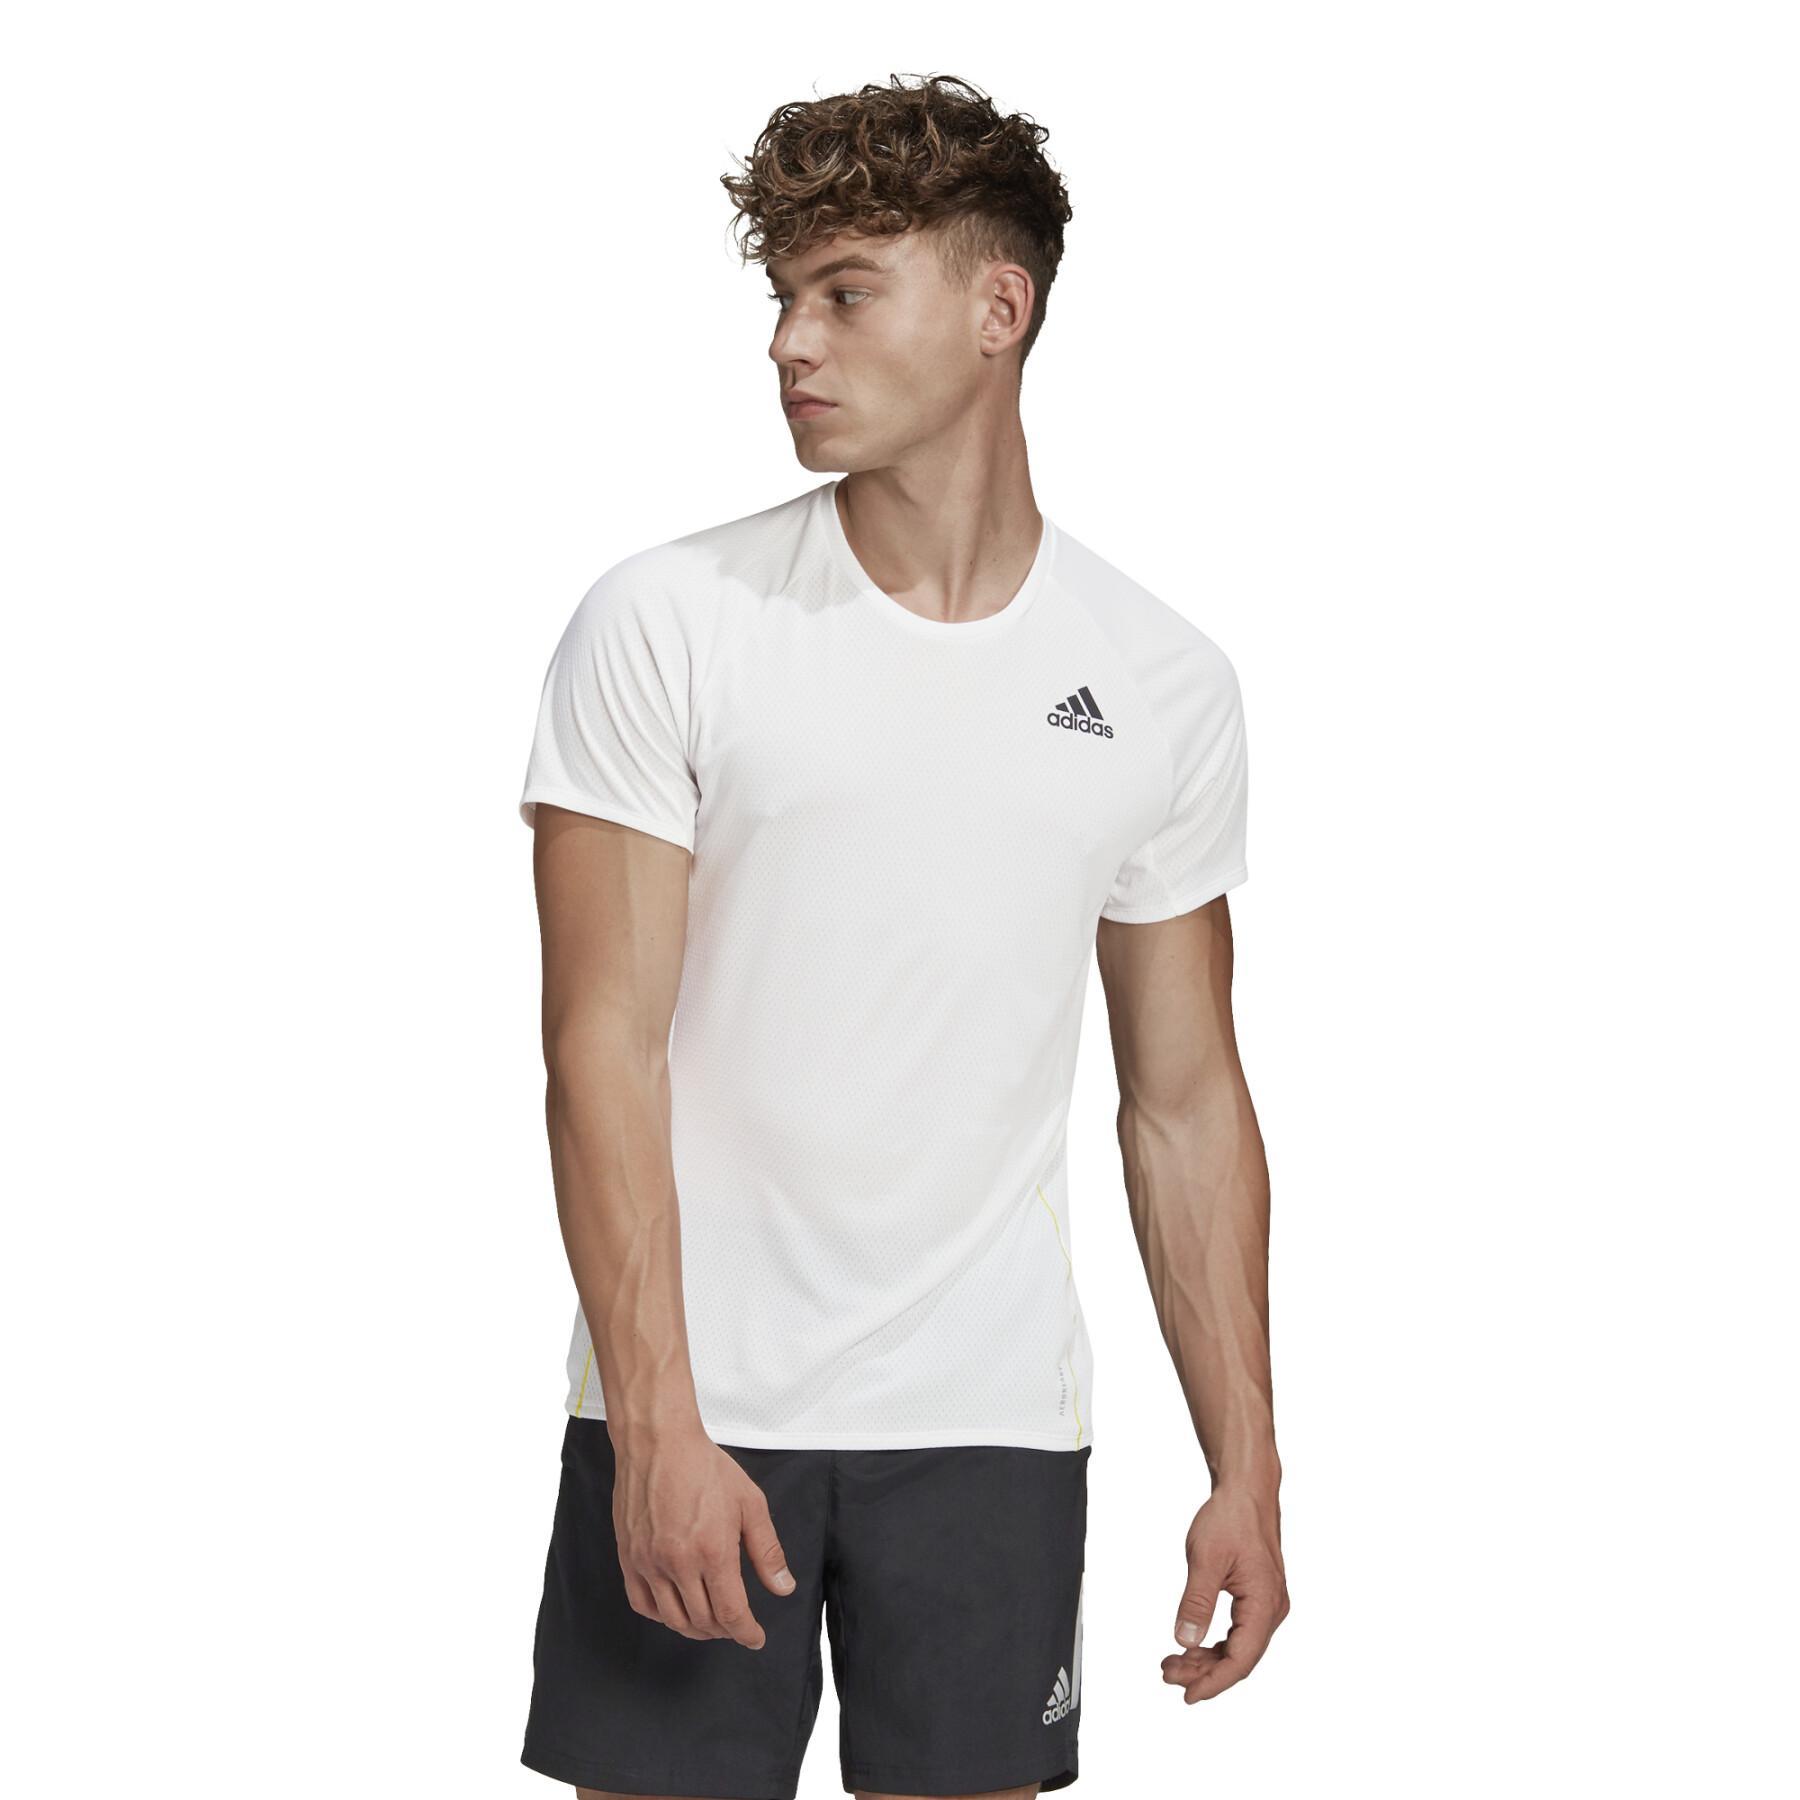 T-shirt runner adidas 2021